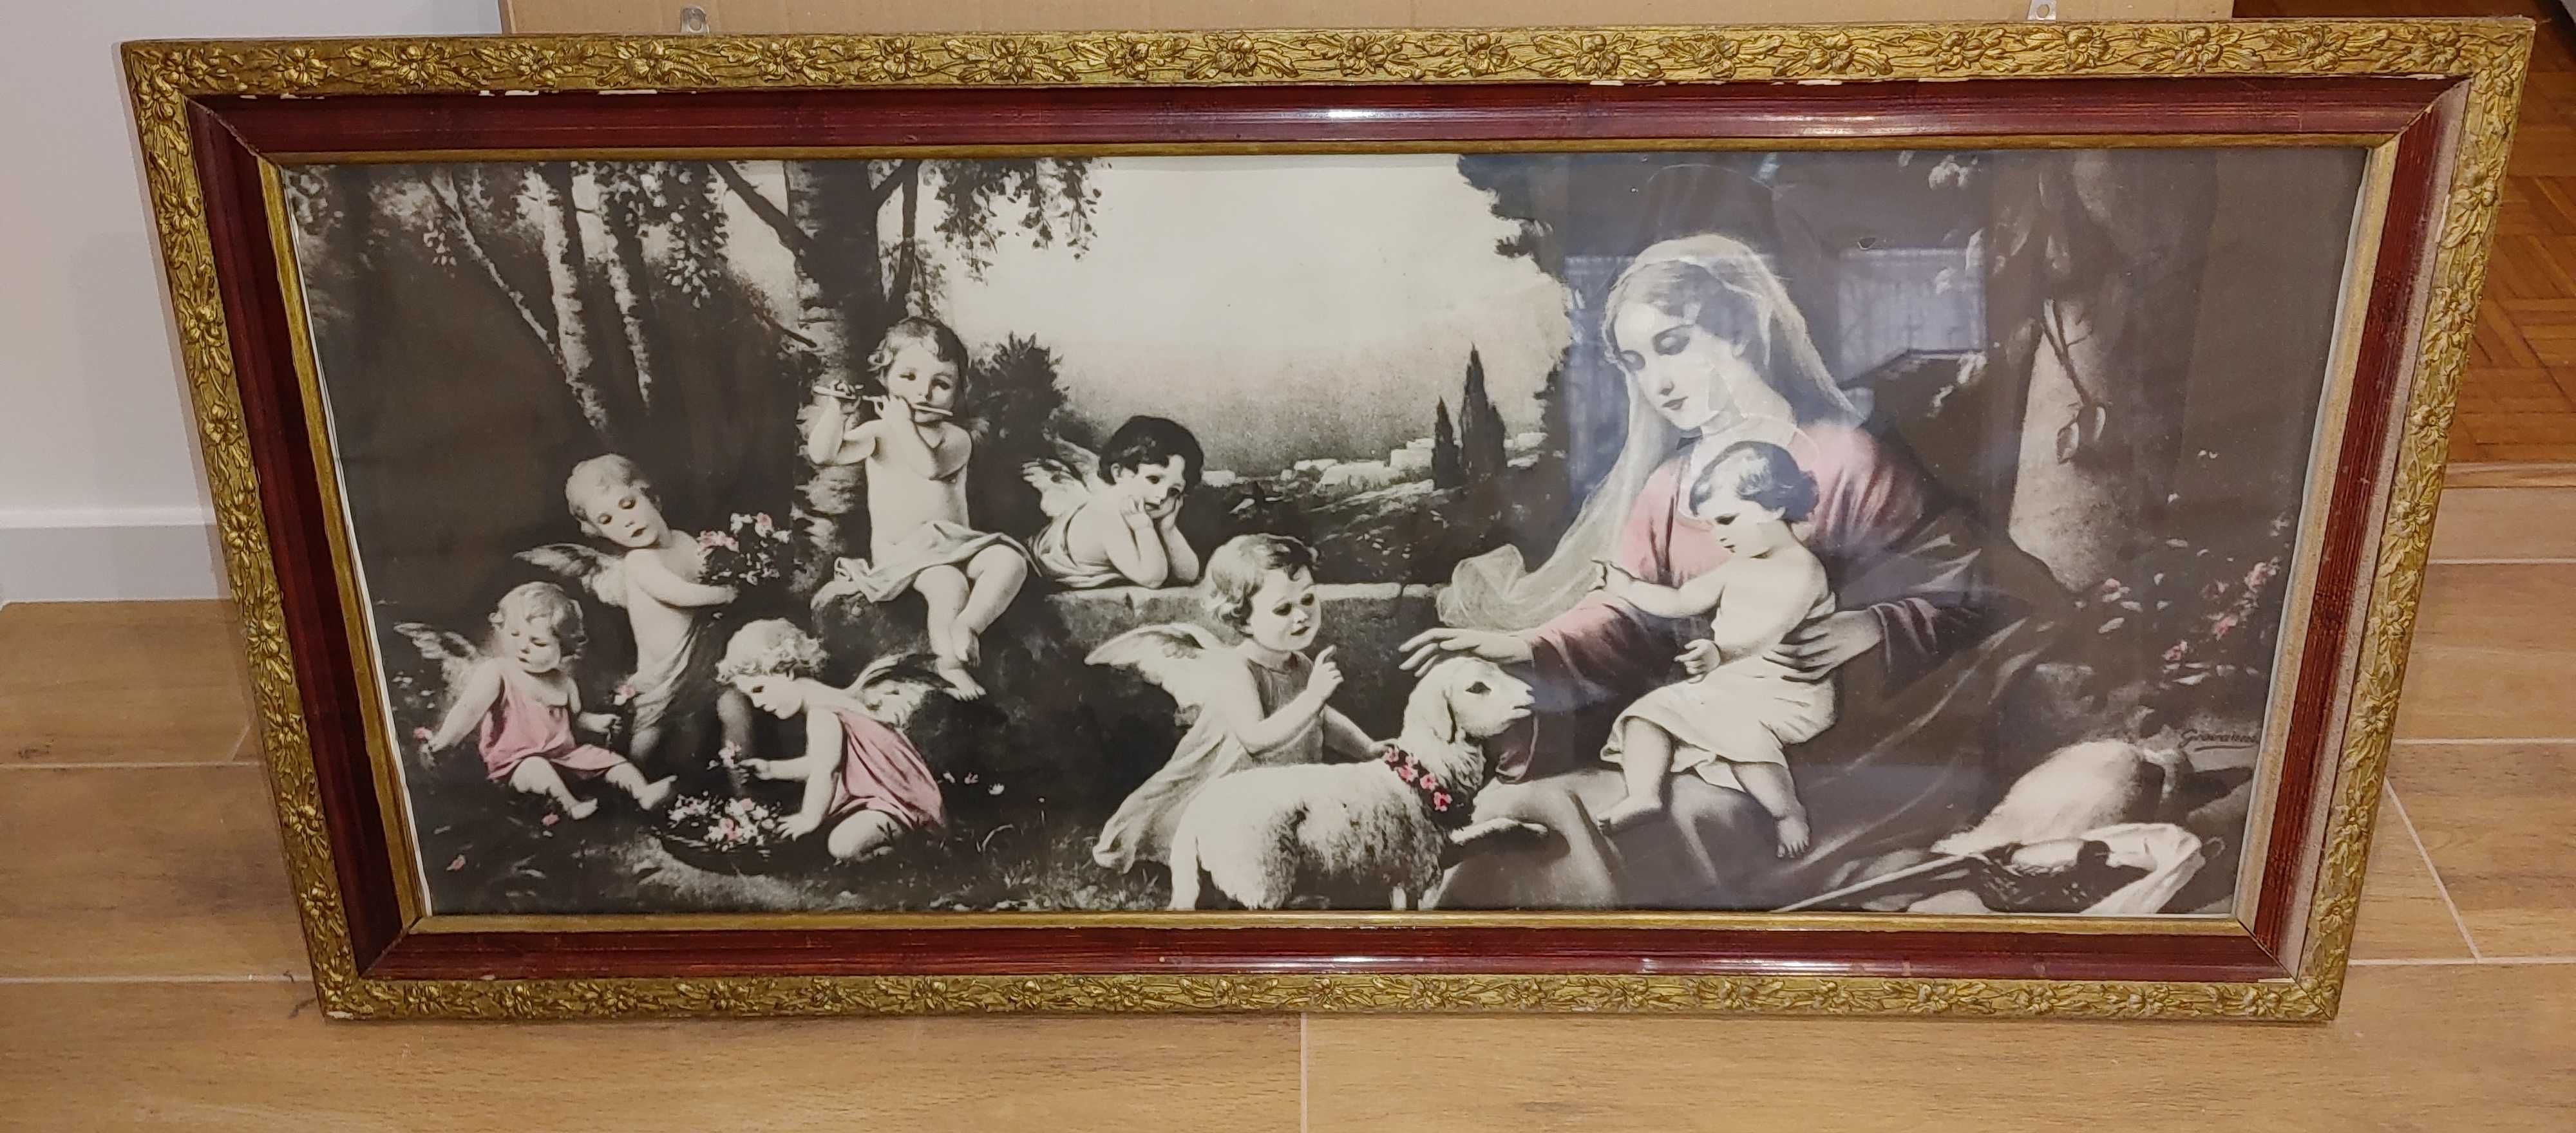 Obraz Giovanni Madonna z aniołkami.